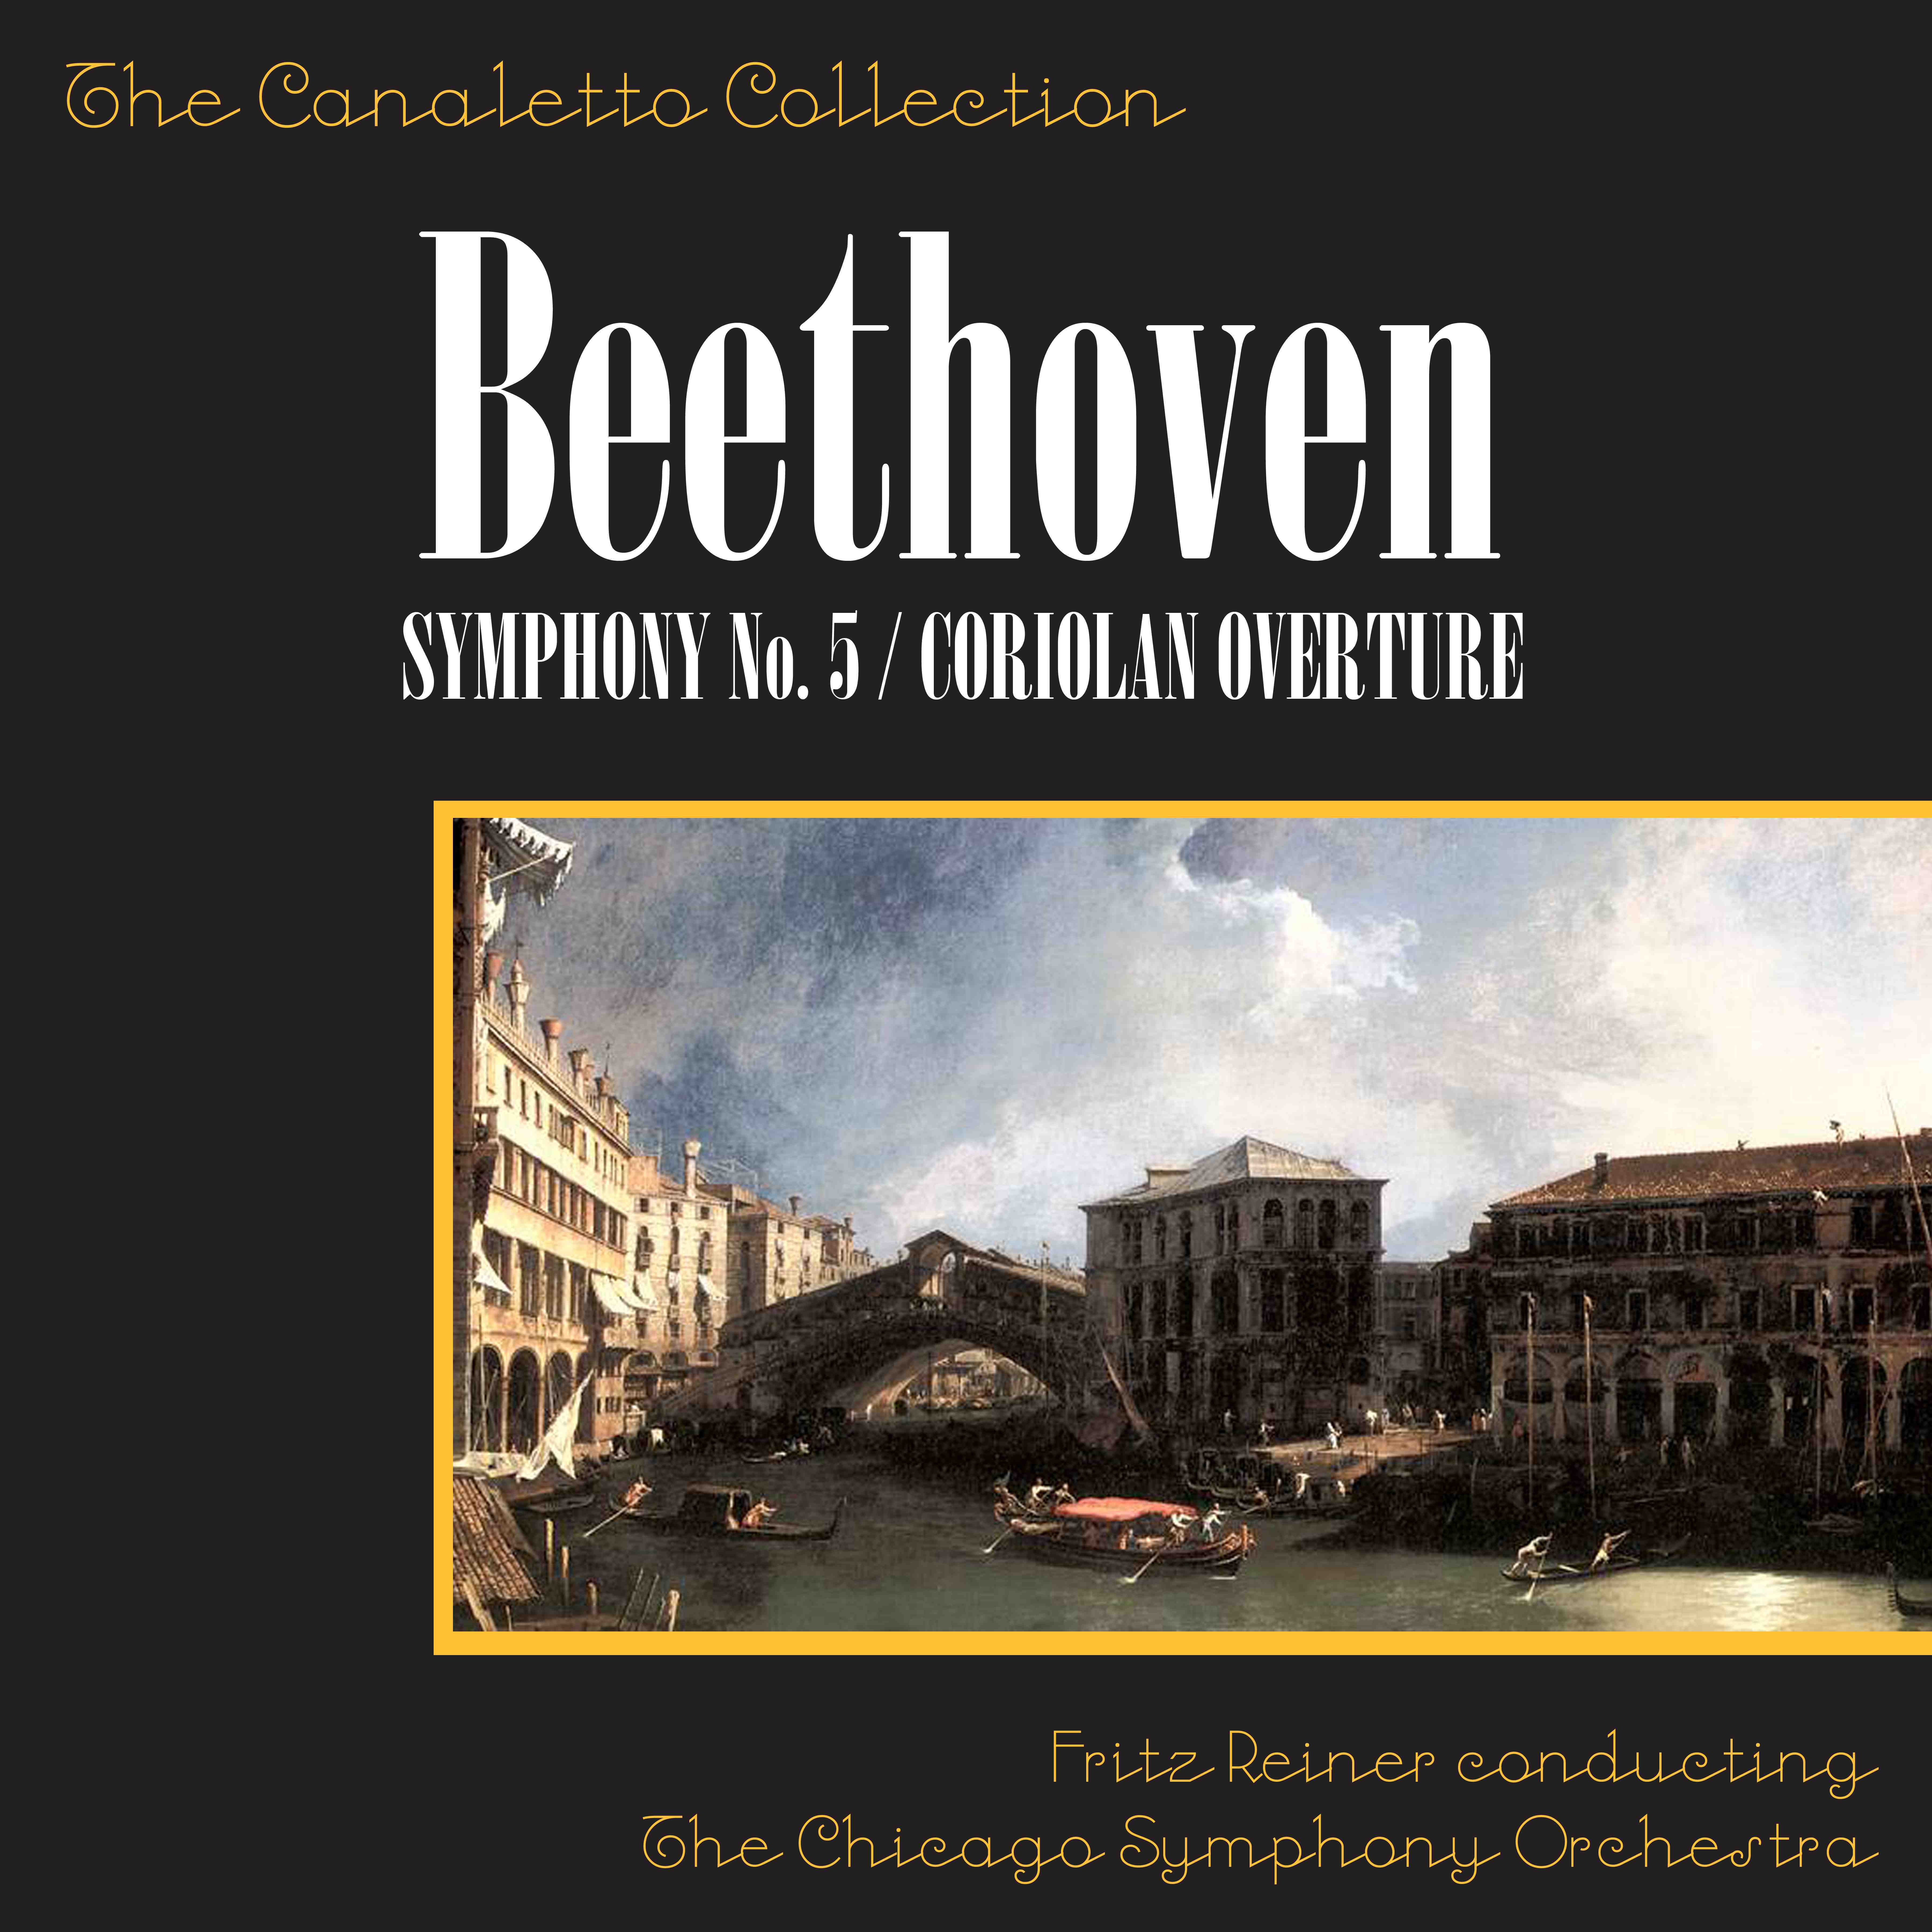 Beethoven: Symphony No. 5 In C Minor, Op. 67/Cariolan Overture, Op. 62